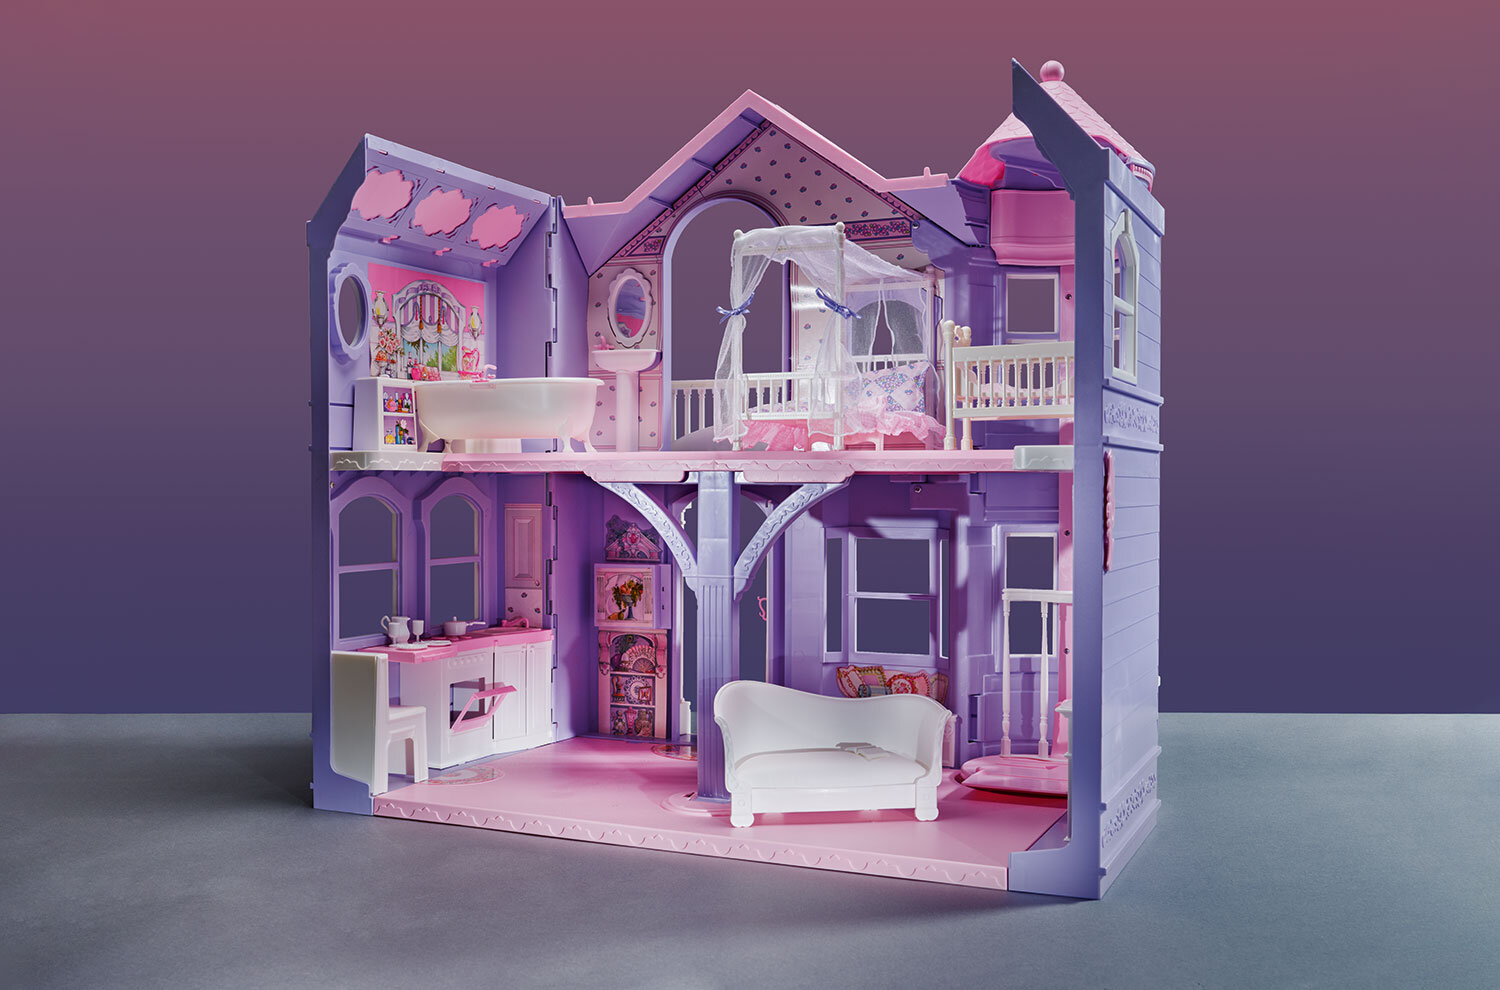 A Dream of a Decade: The 90s Barbie Dream House